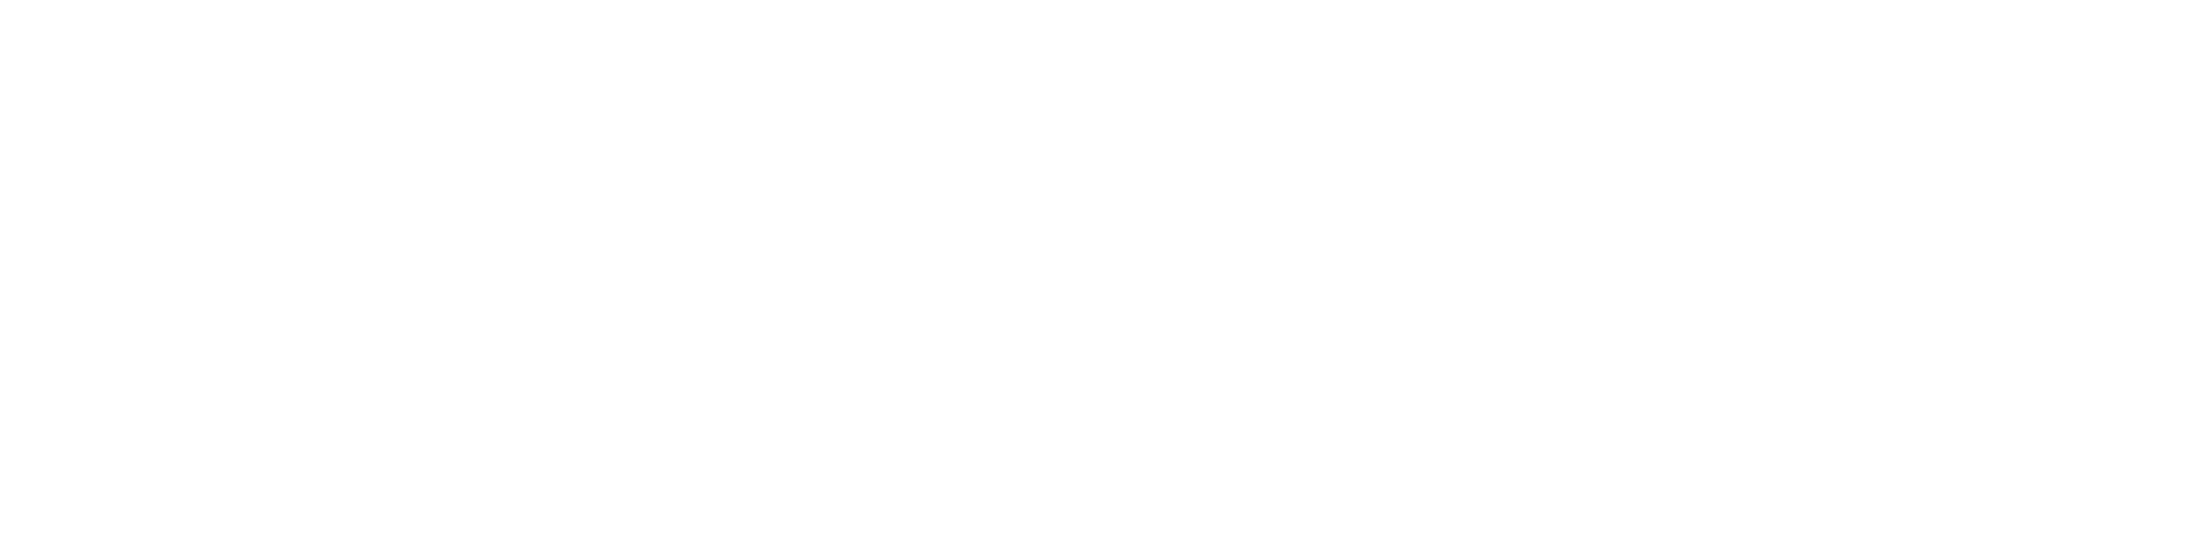 NMUSA-logo-white.png